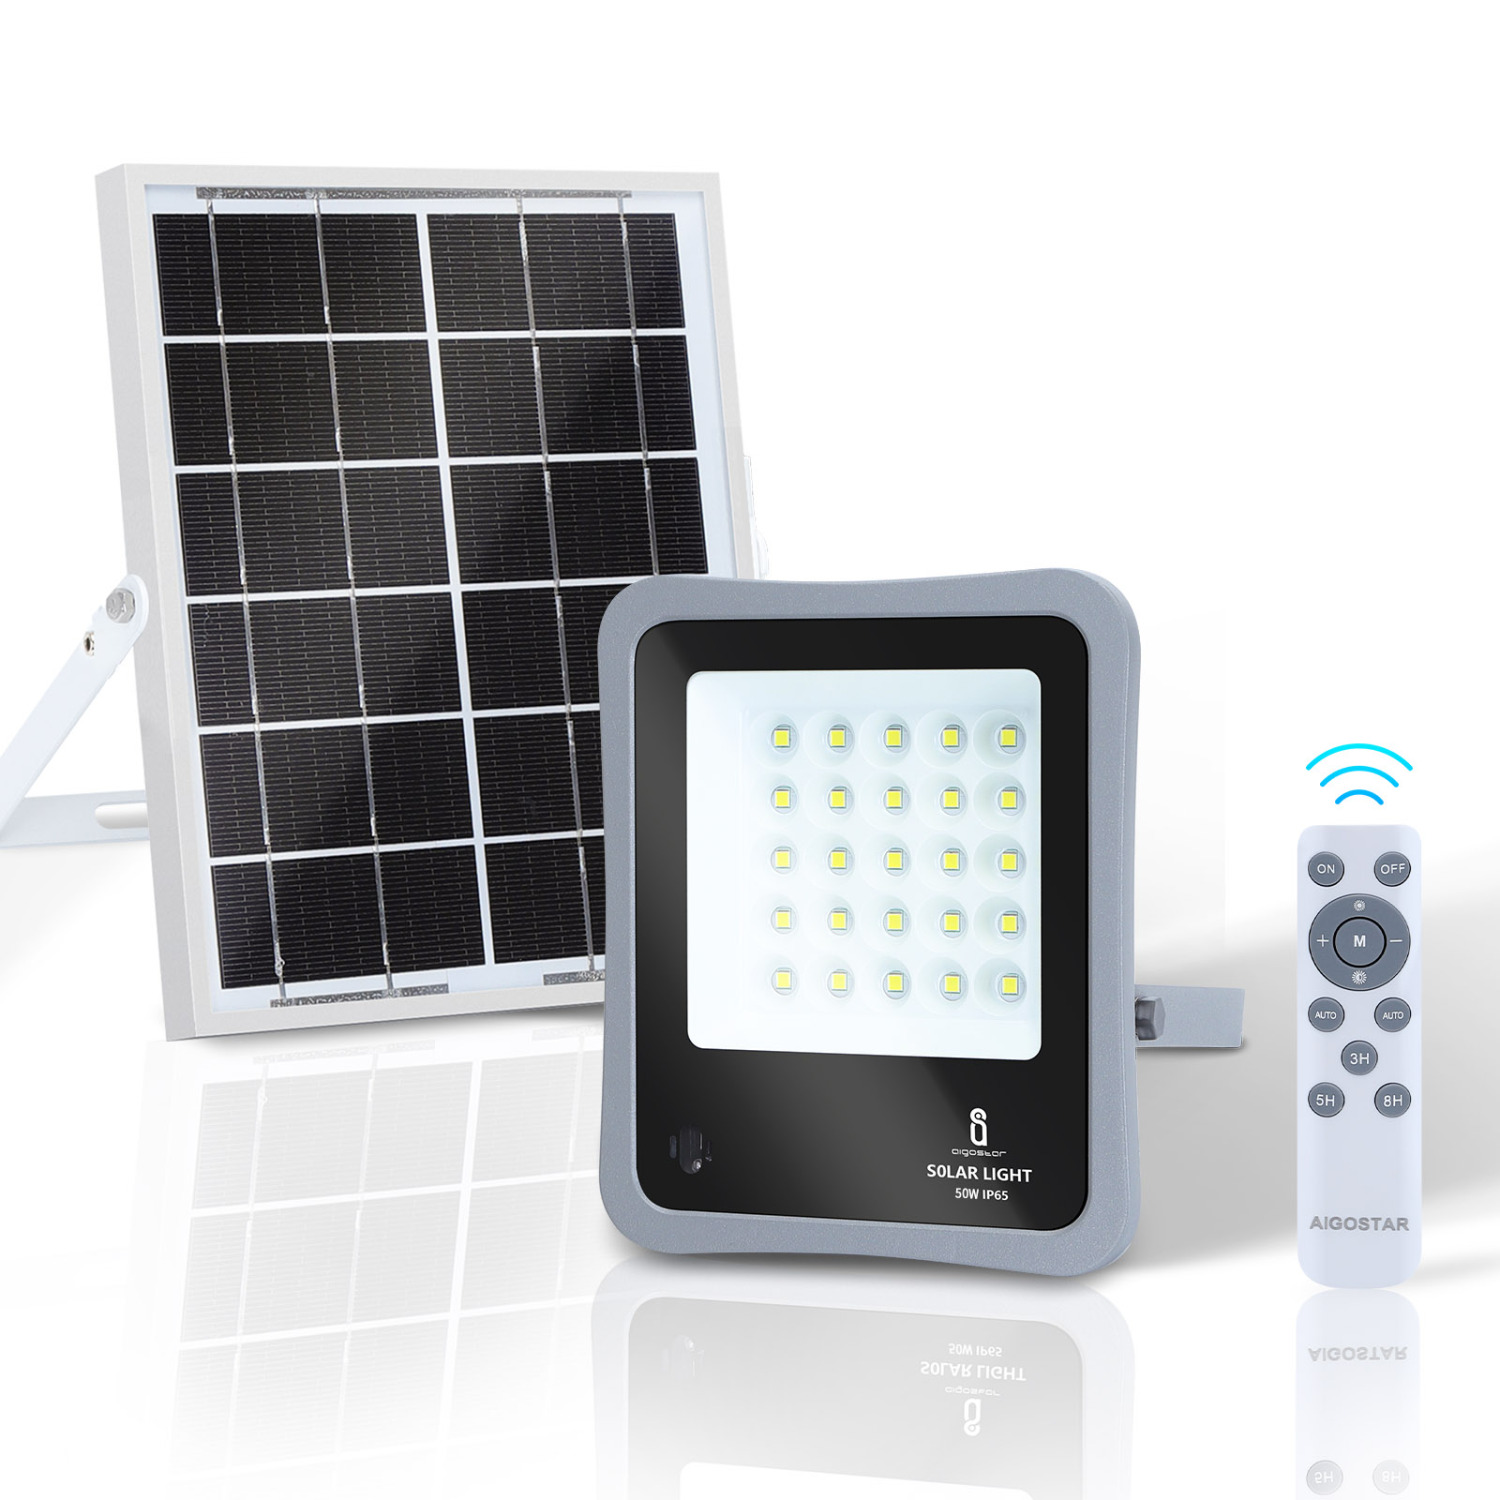 Aigostar - Faretto solare LED per esterni con telecomando da 50W, luce bianca 6500k. Faretto solare crepuscolare con funzione timer, IP65 resistenze alla pioggia